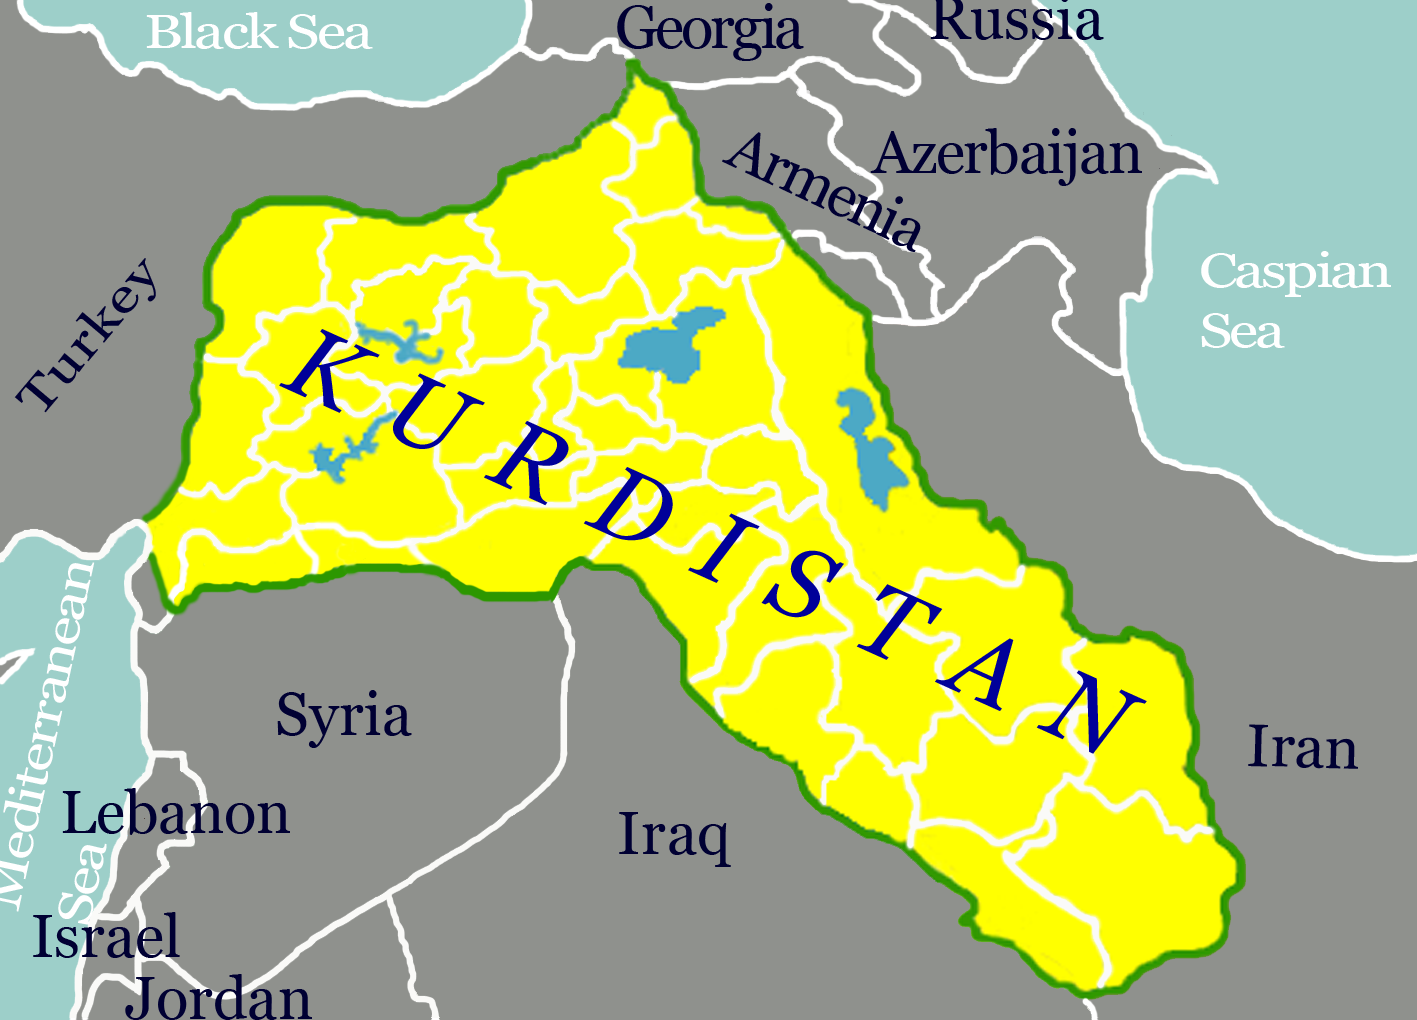 Greater%2BKurdistan%2Bwhich%2Bincludes%2Bparts%2Bof%2BIraq%252CTurkey%252C%2BSyria%252C%2Band%2BIran.png